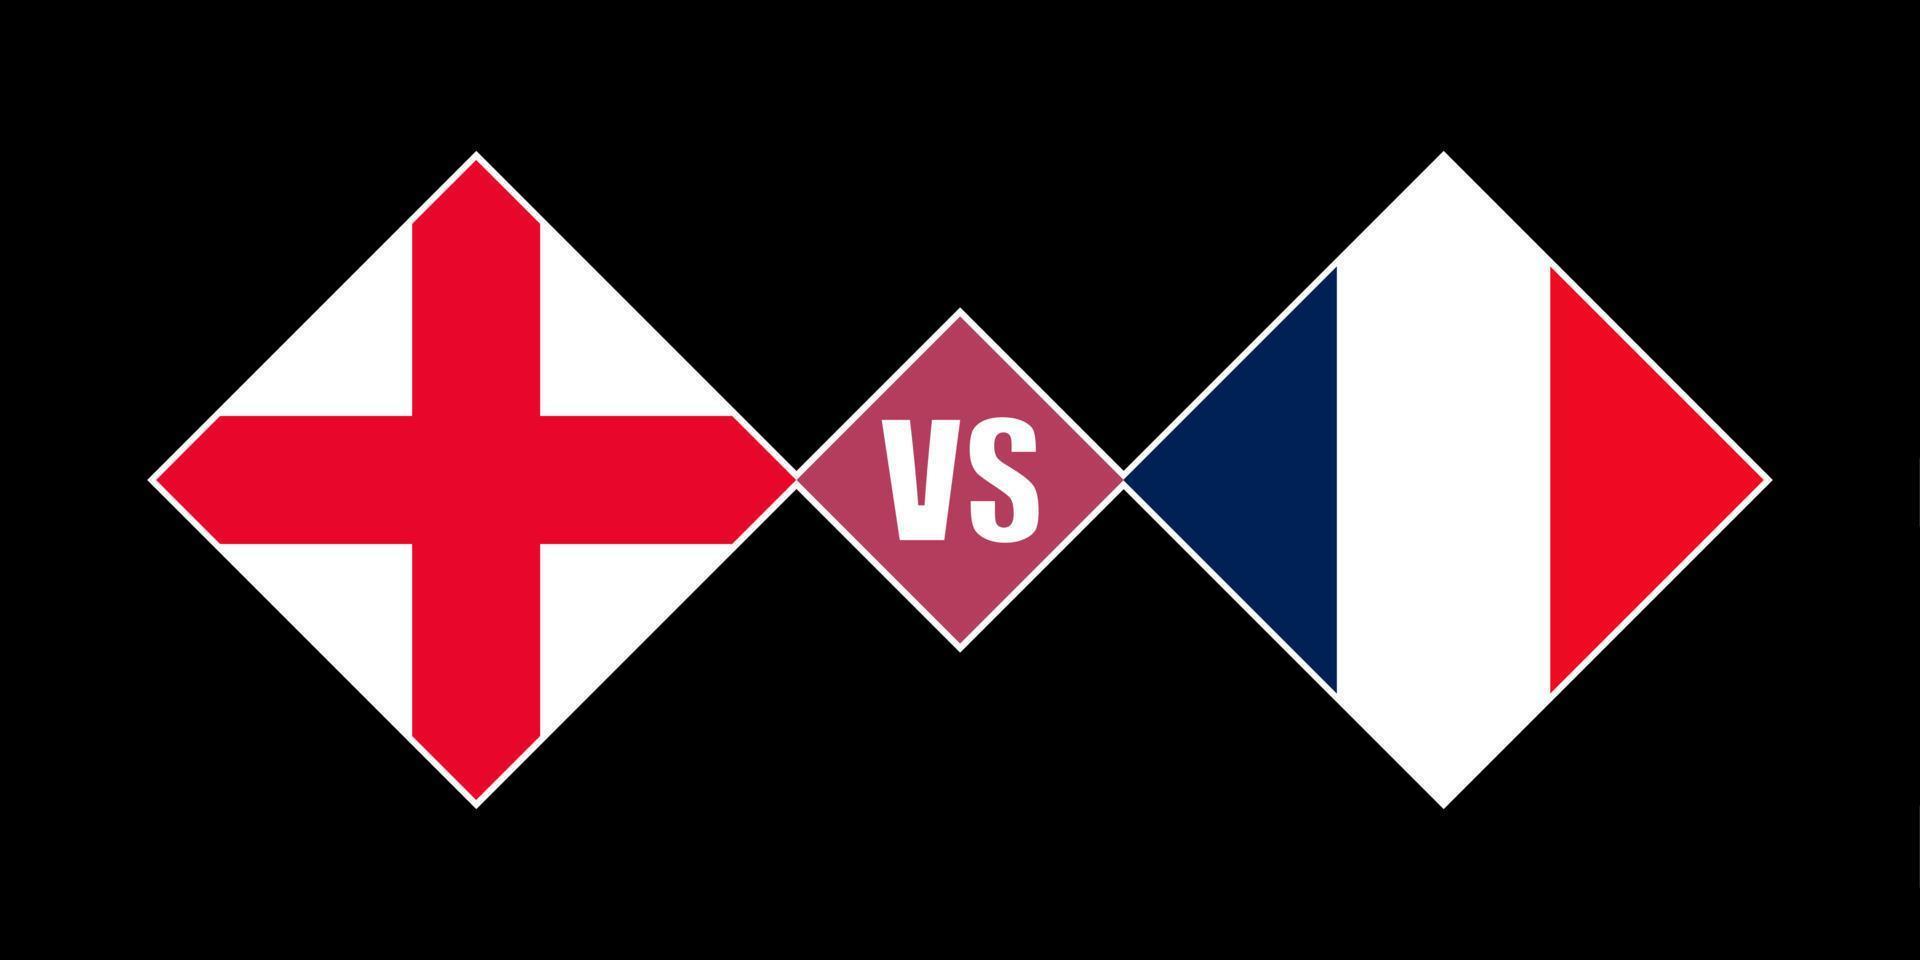 England vs France flag concept. Vector illustration.